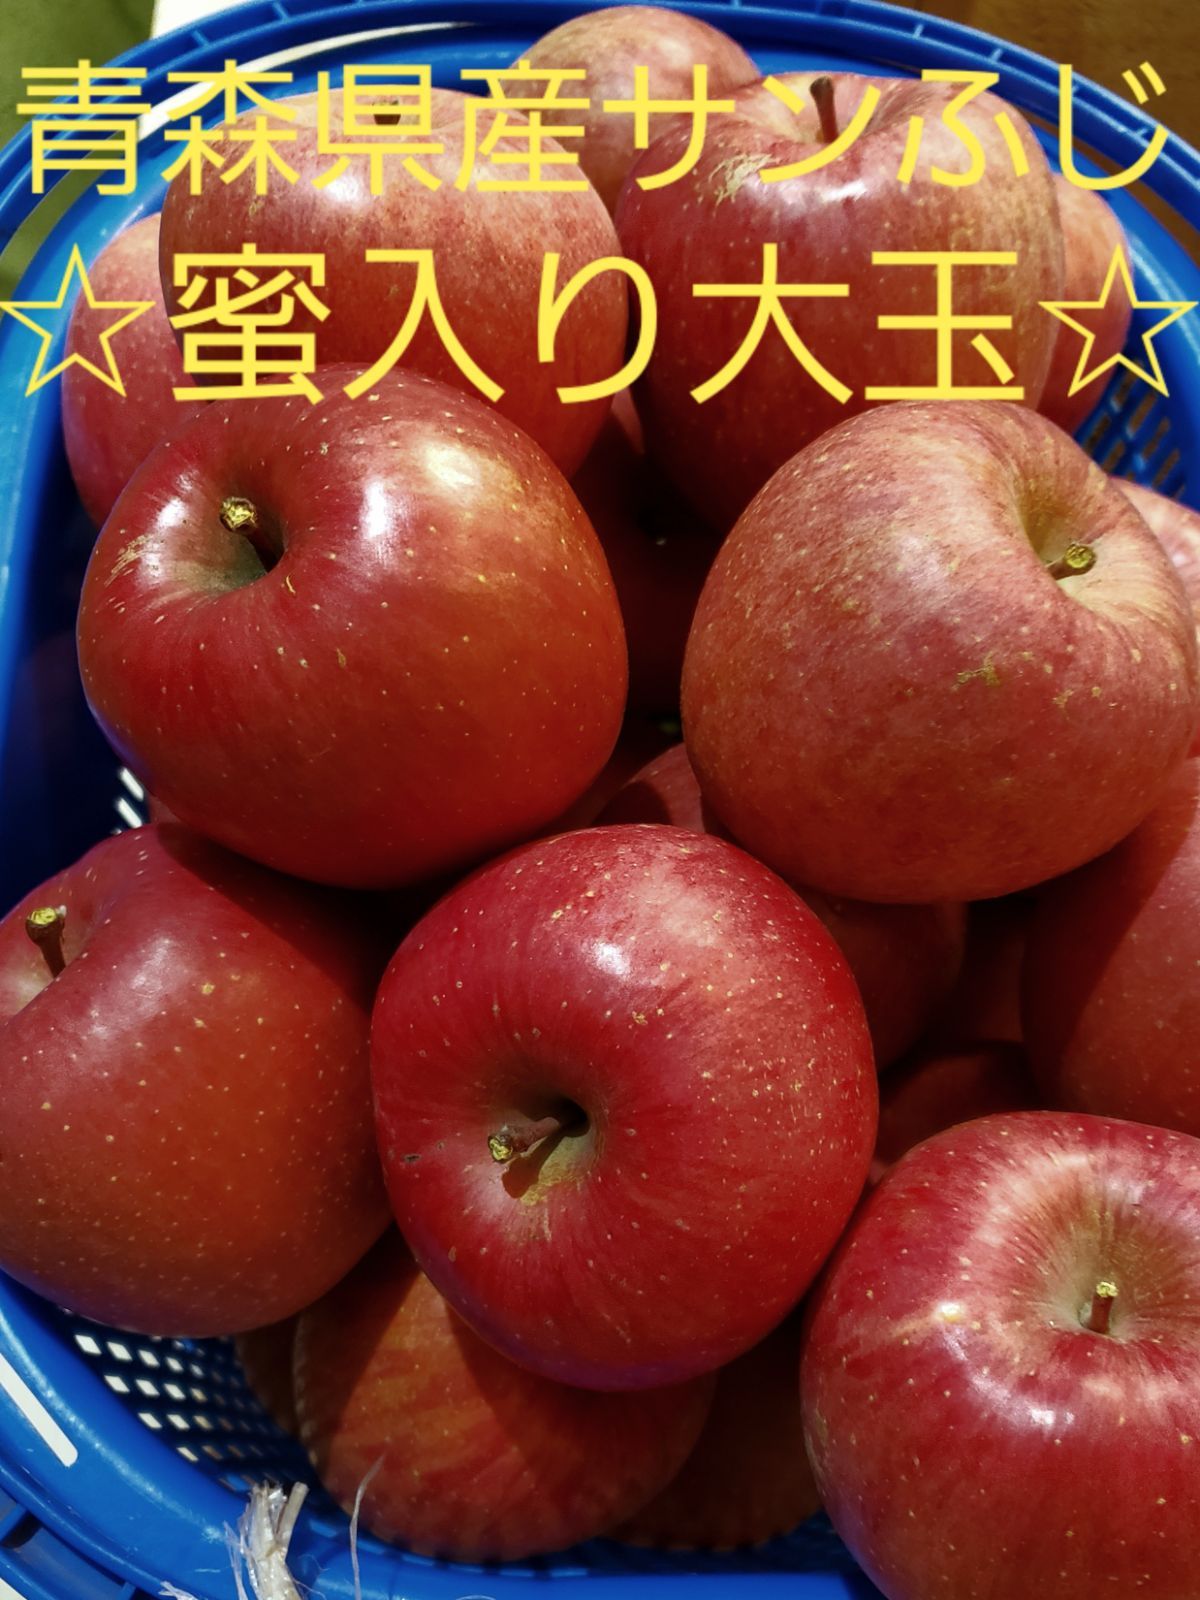 ★期間限定★青森県産 ふじ りんご 家庭用 6~8玉 ⑧